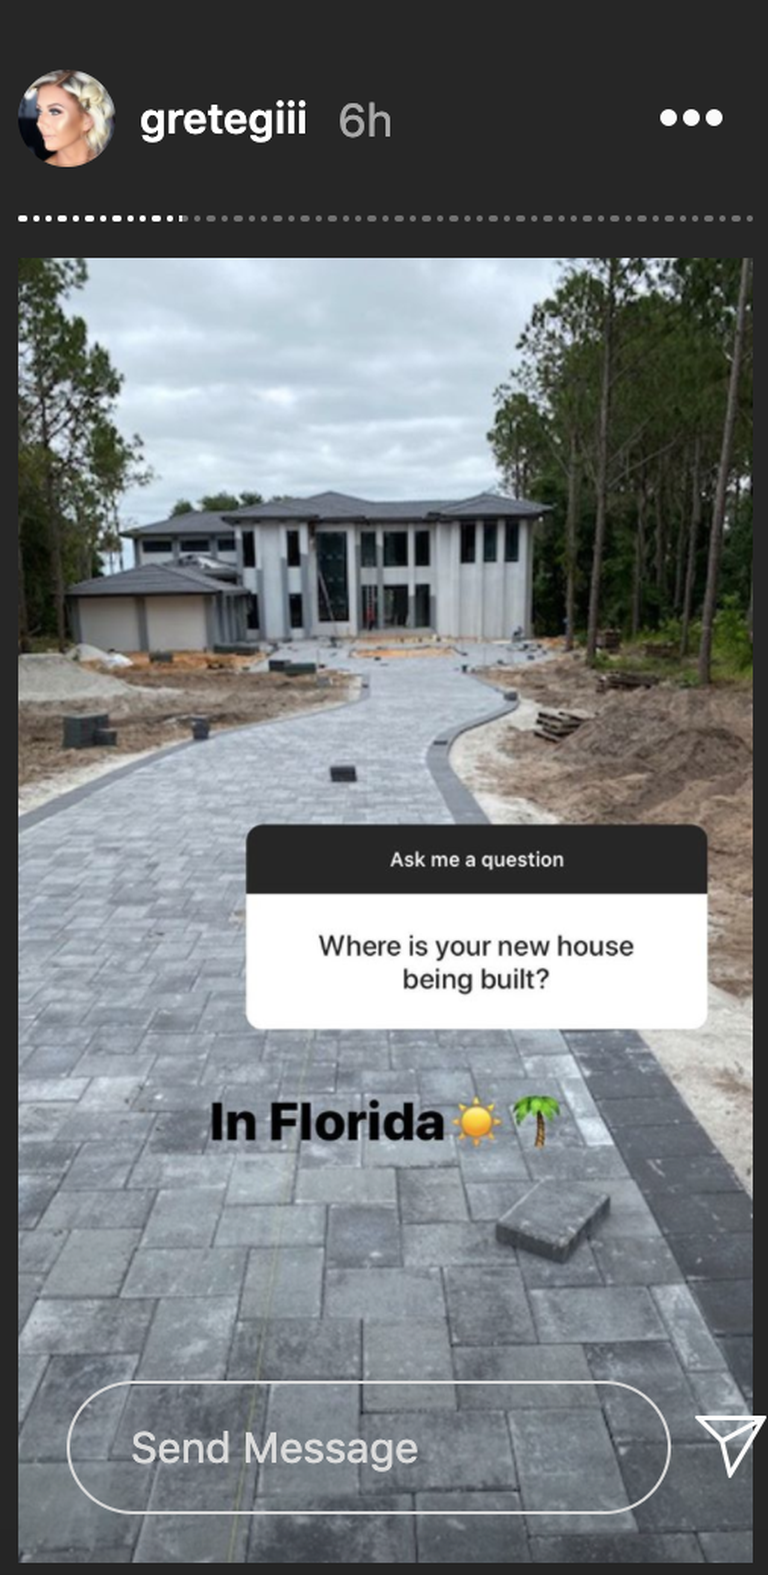 Kuvatõmmis gretegiii Instagram Storyst: Grete Griffini pere uus maja Floridas.